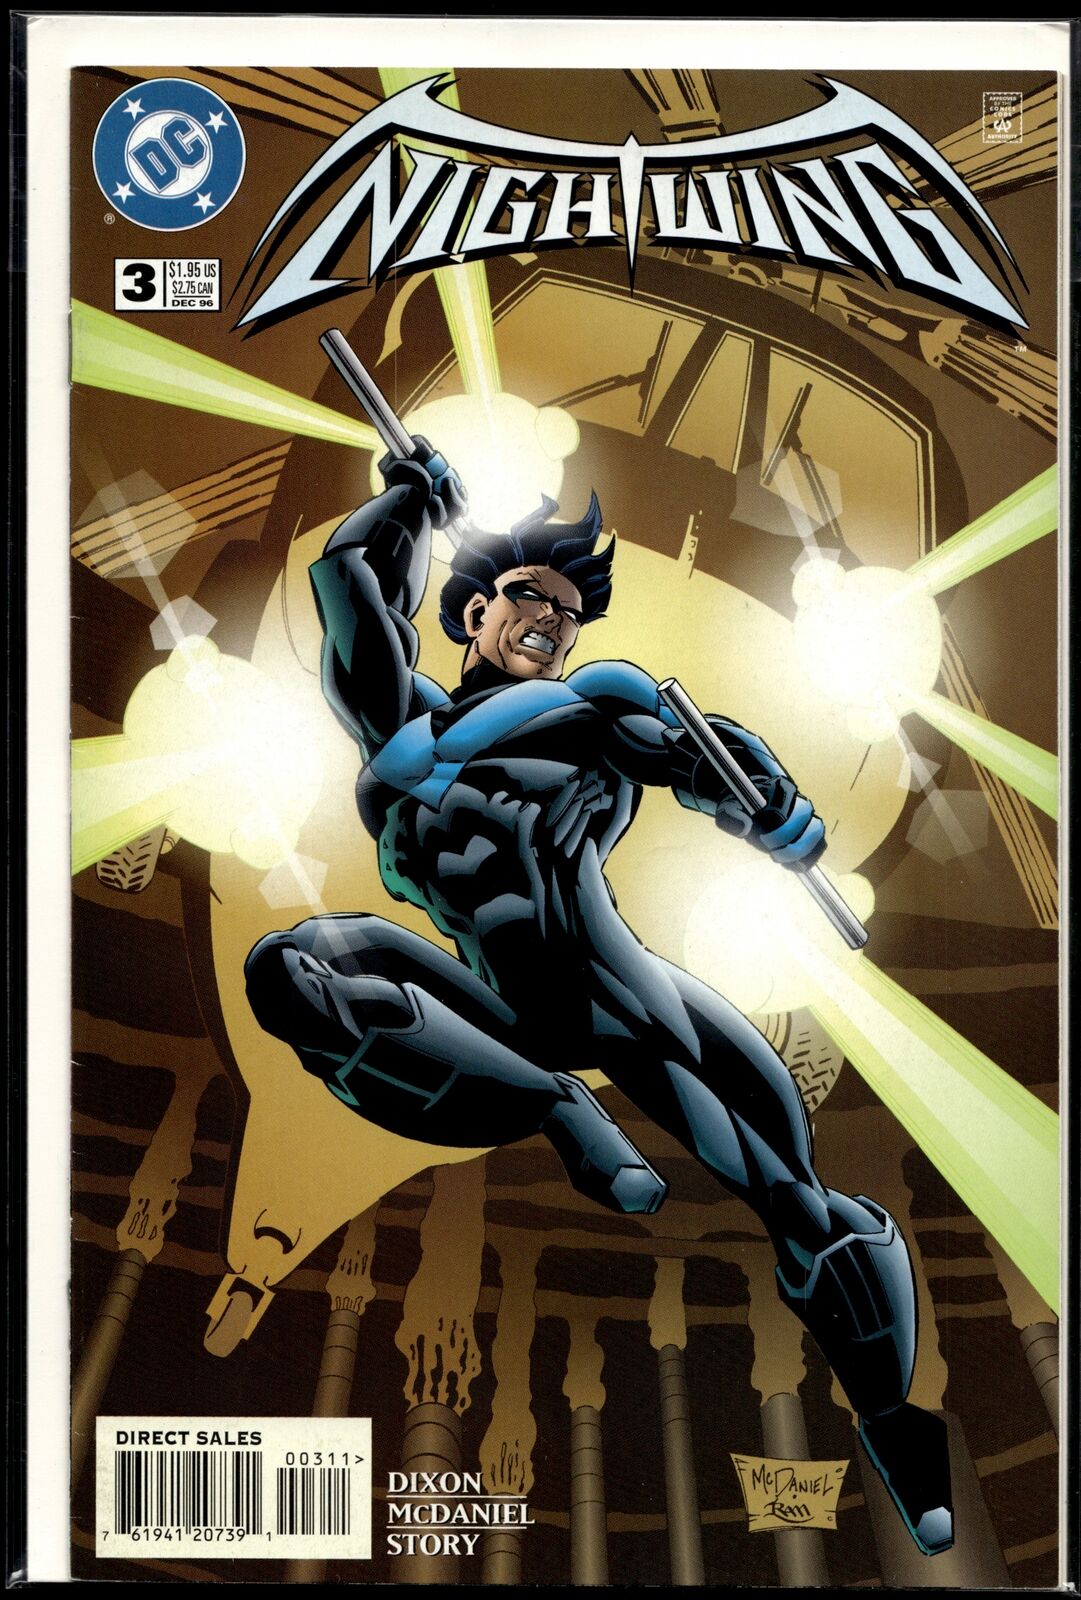 1996 Nightwing #3 DC Comic